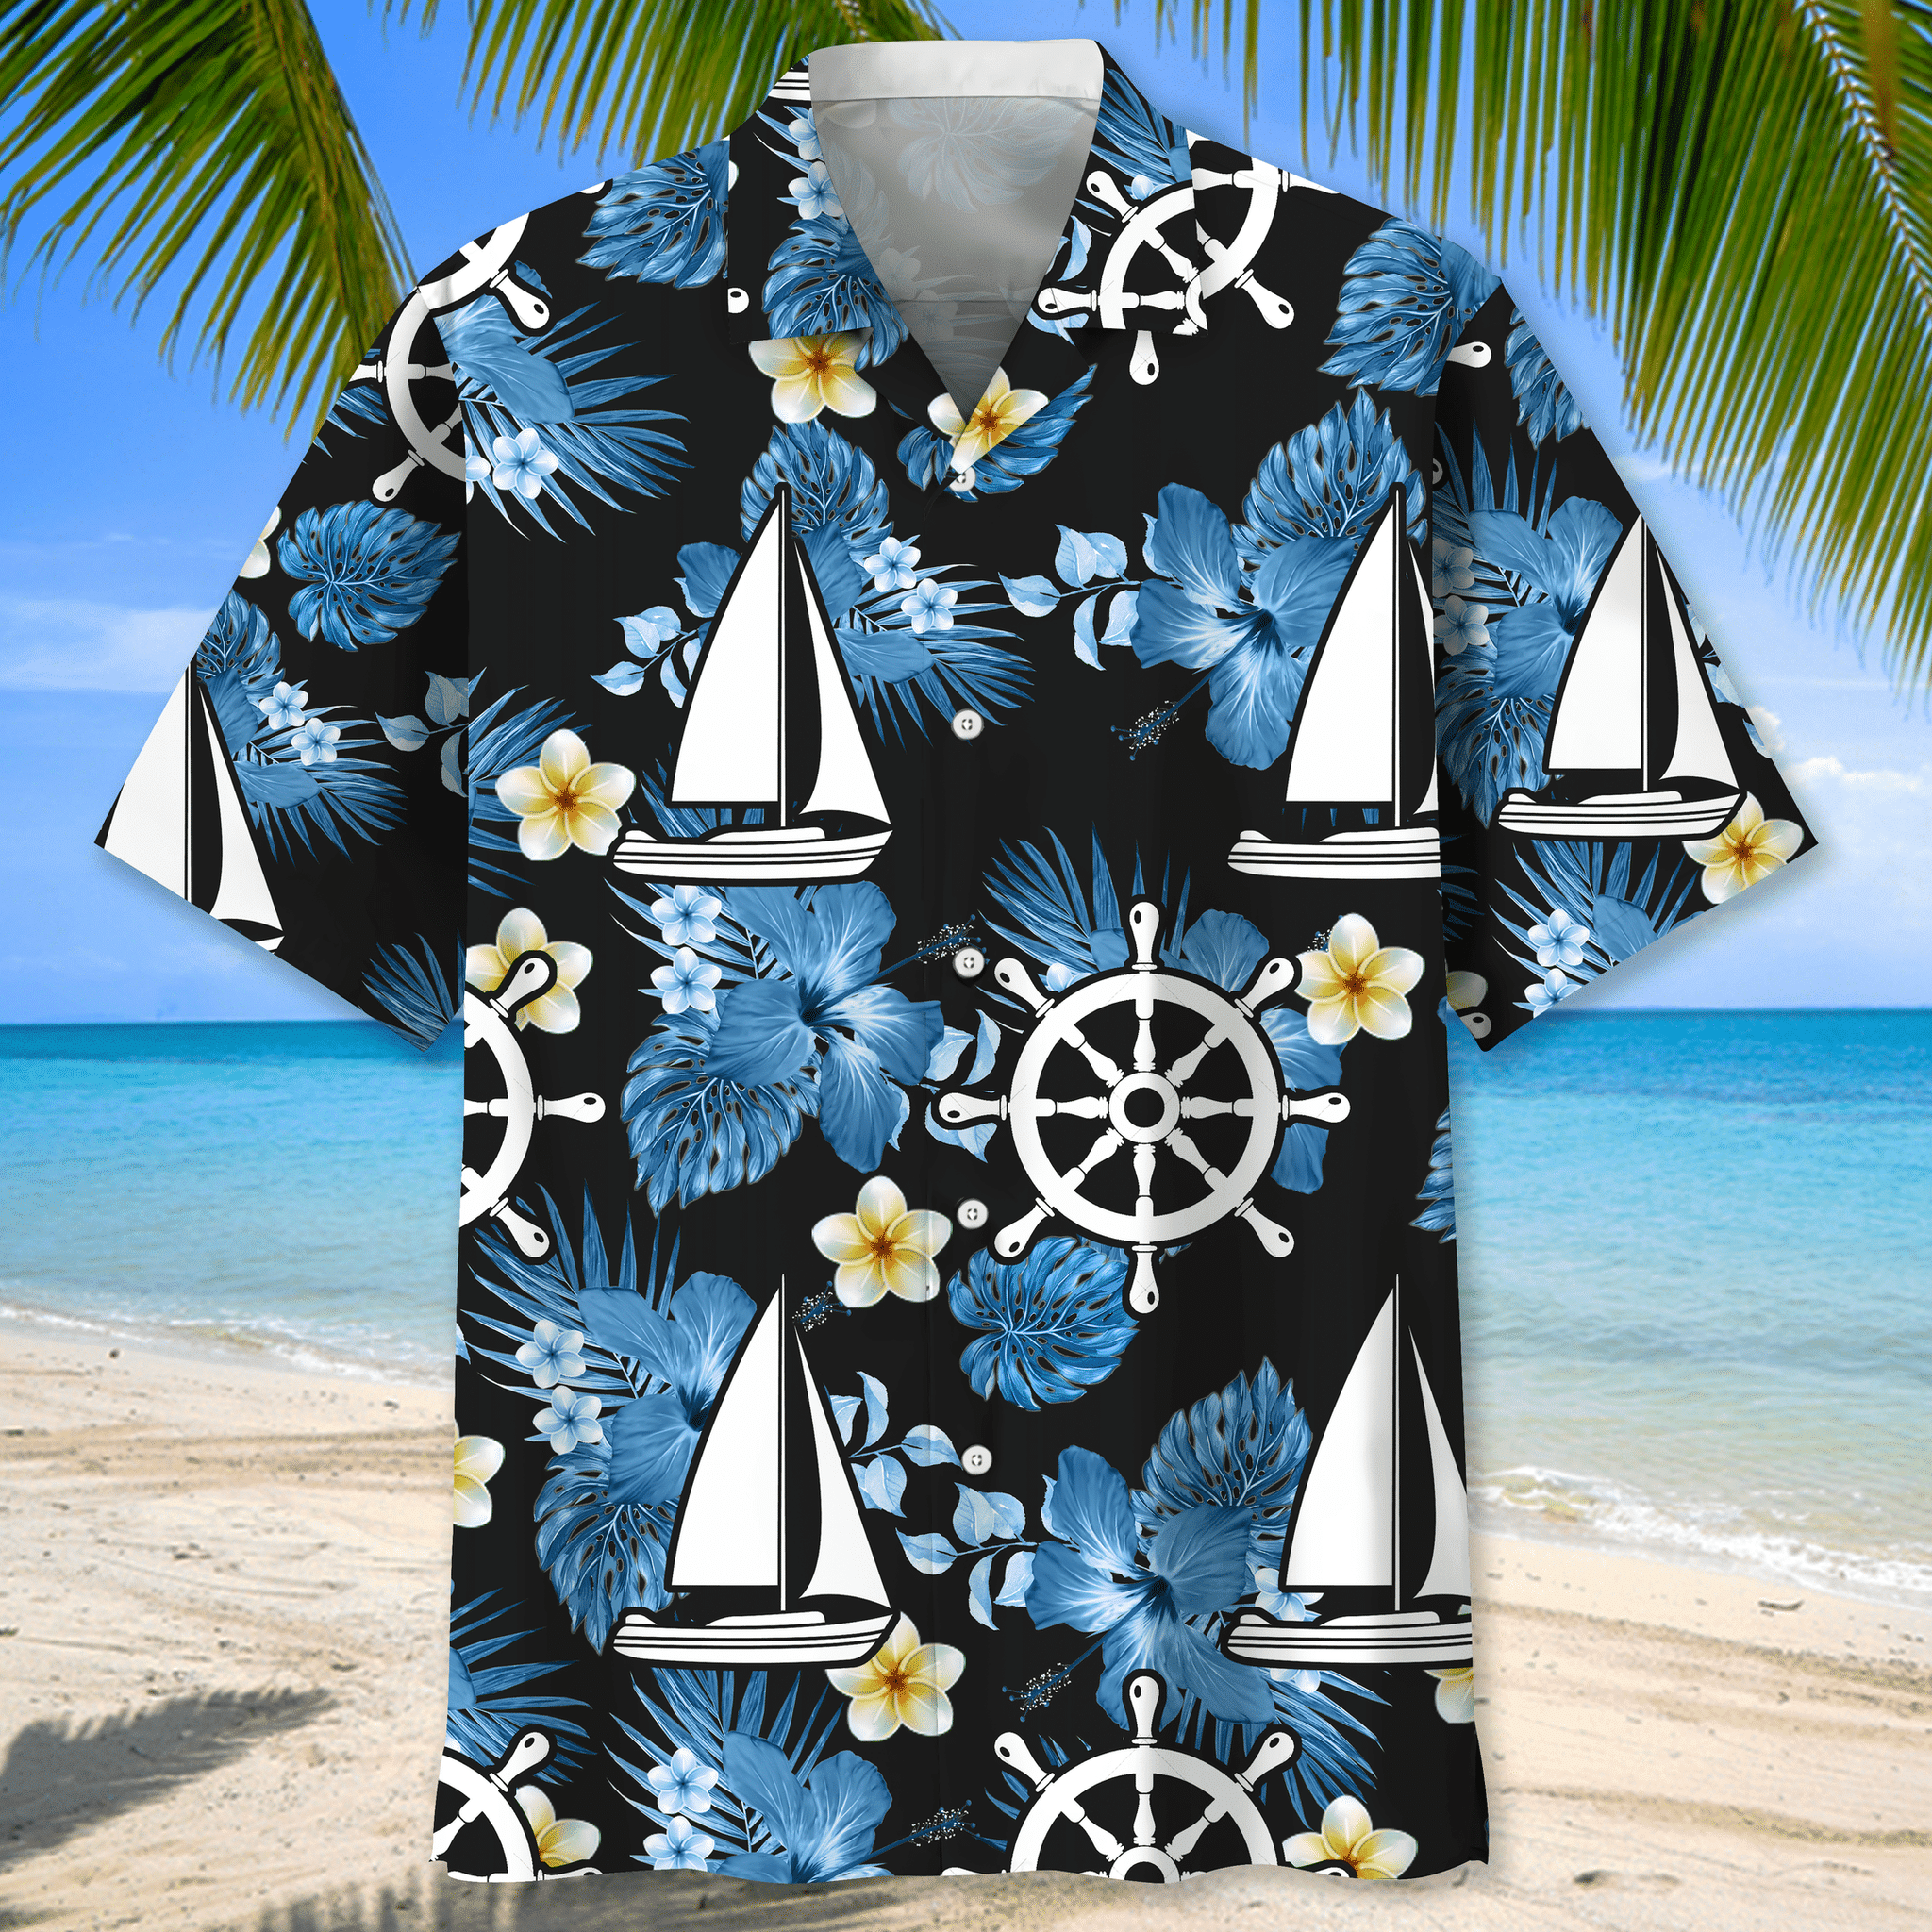 Sailing nature Hawaiian shirt and short 1